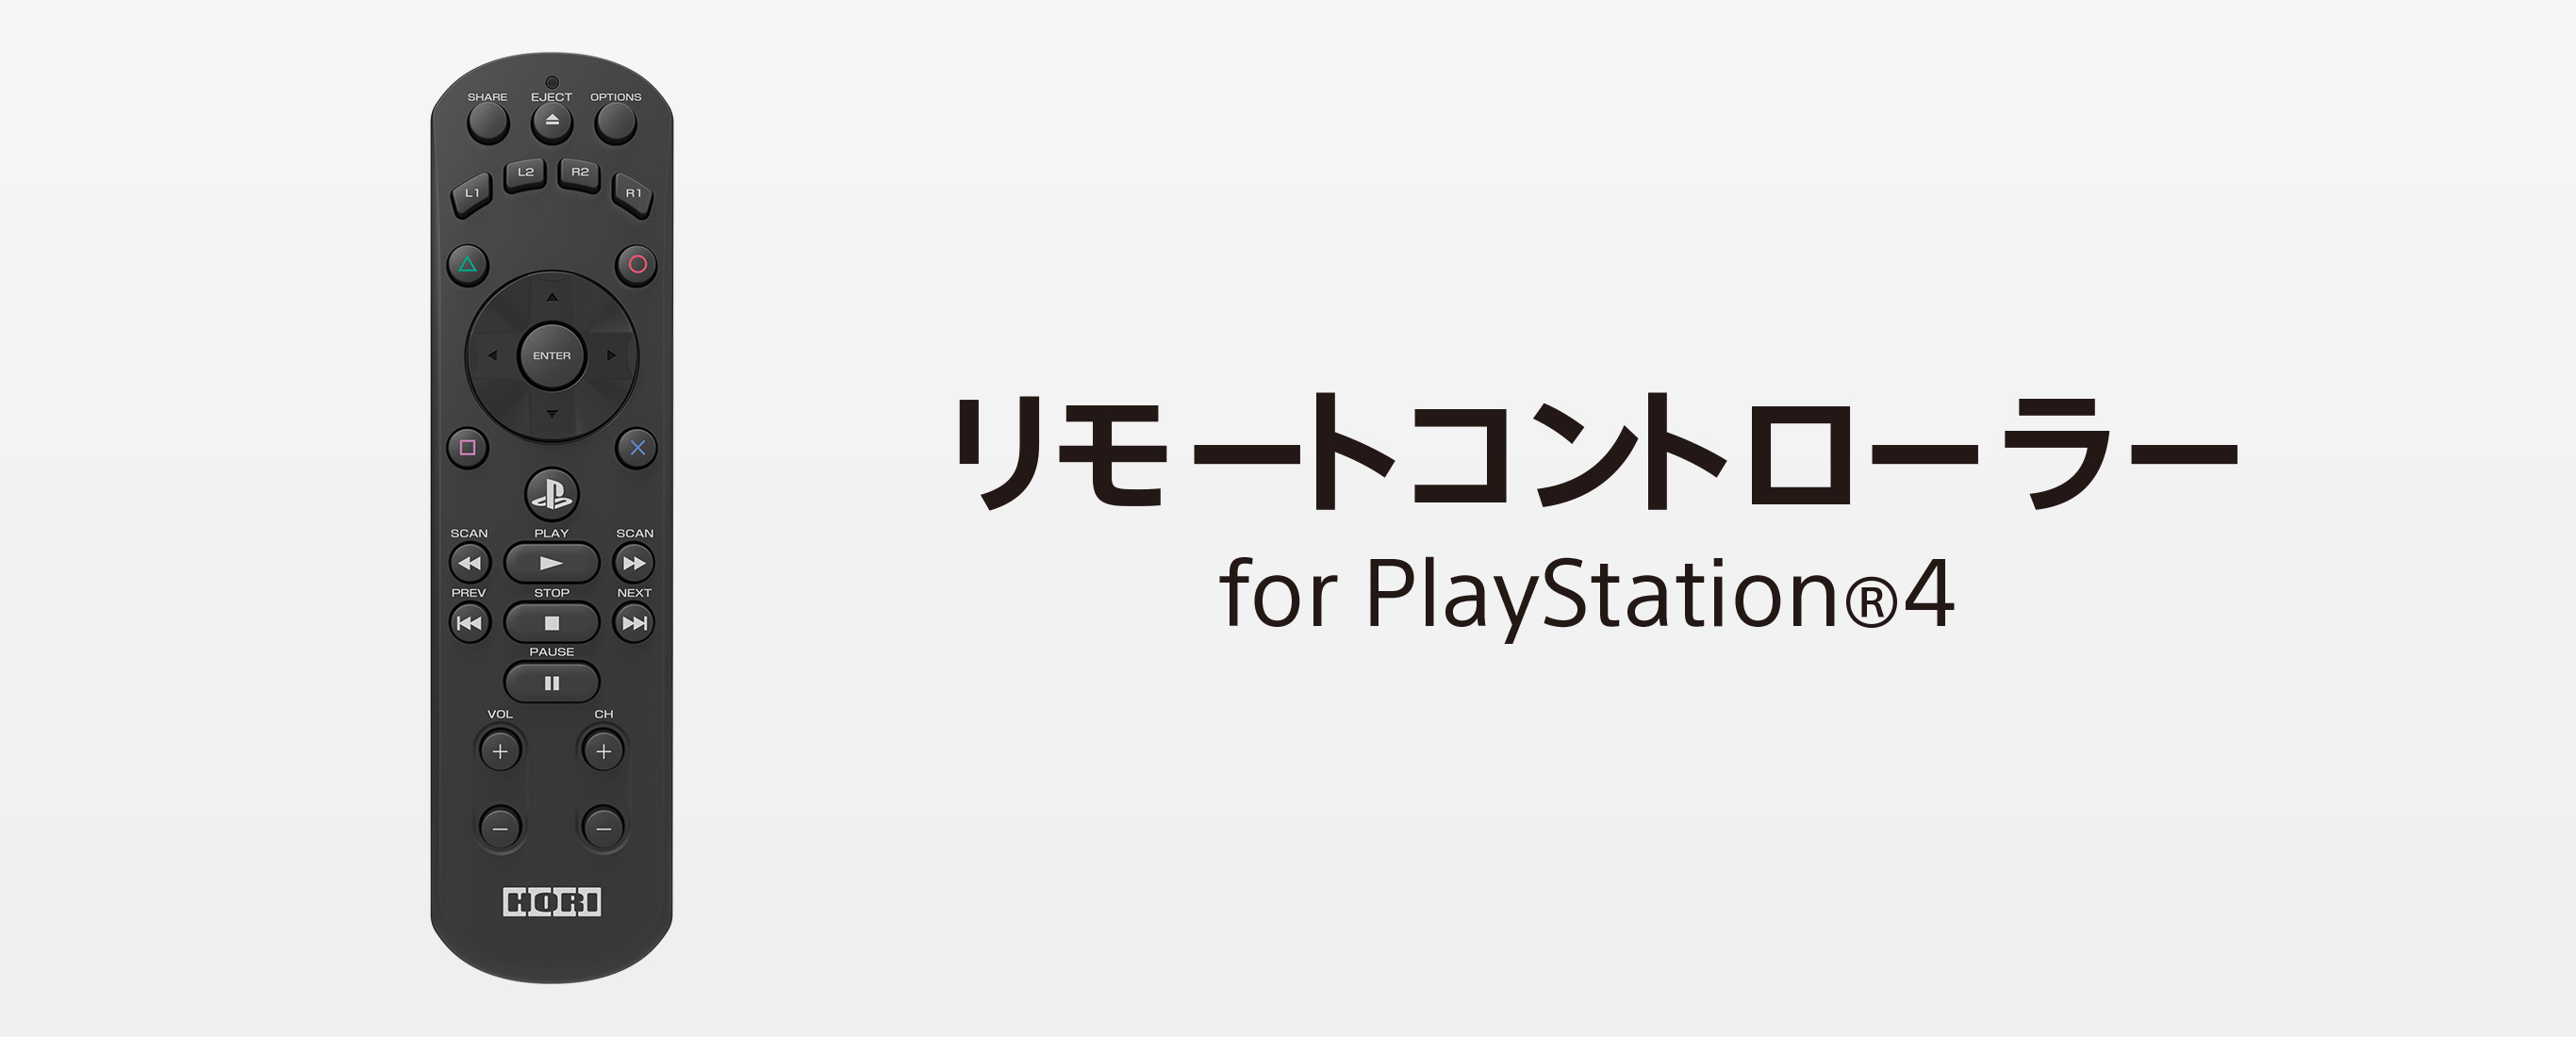 株式会社 Hori リモートコントローラー For Playstation 4